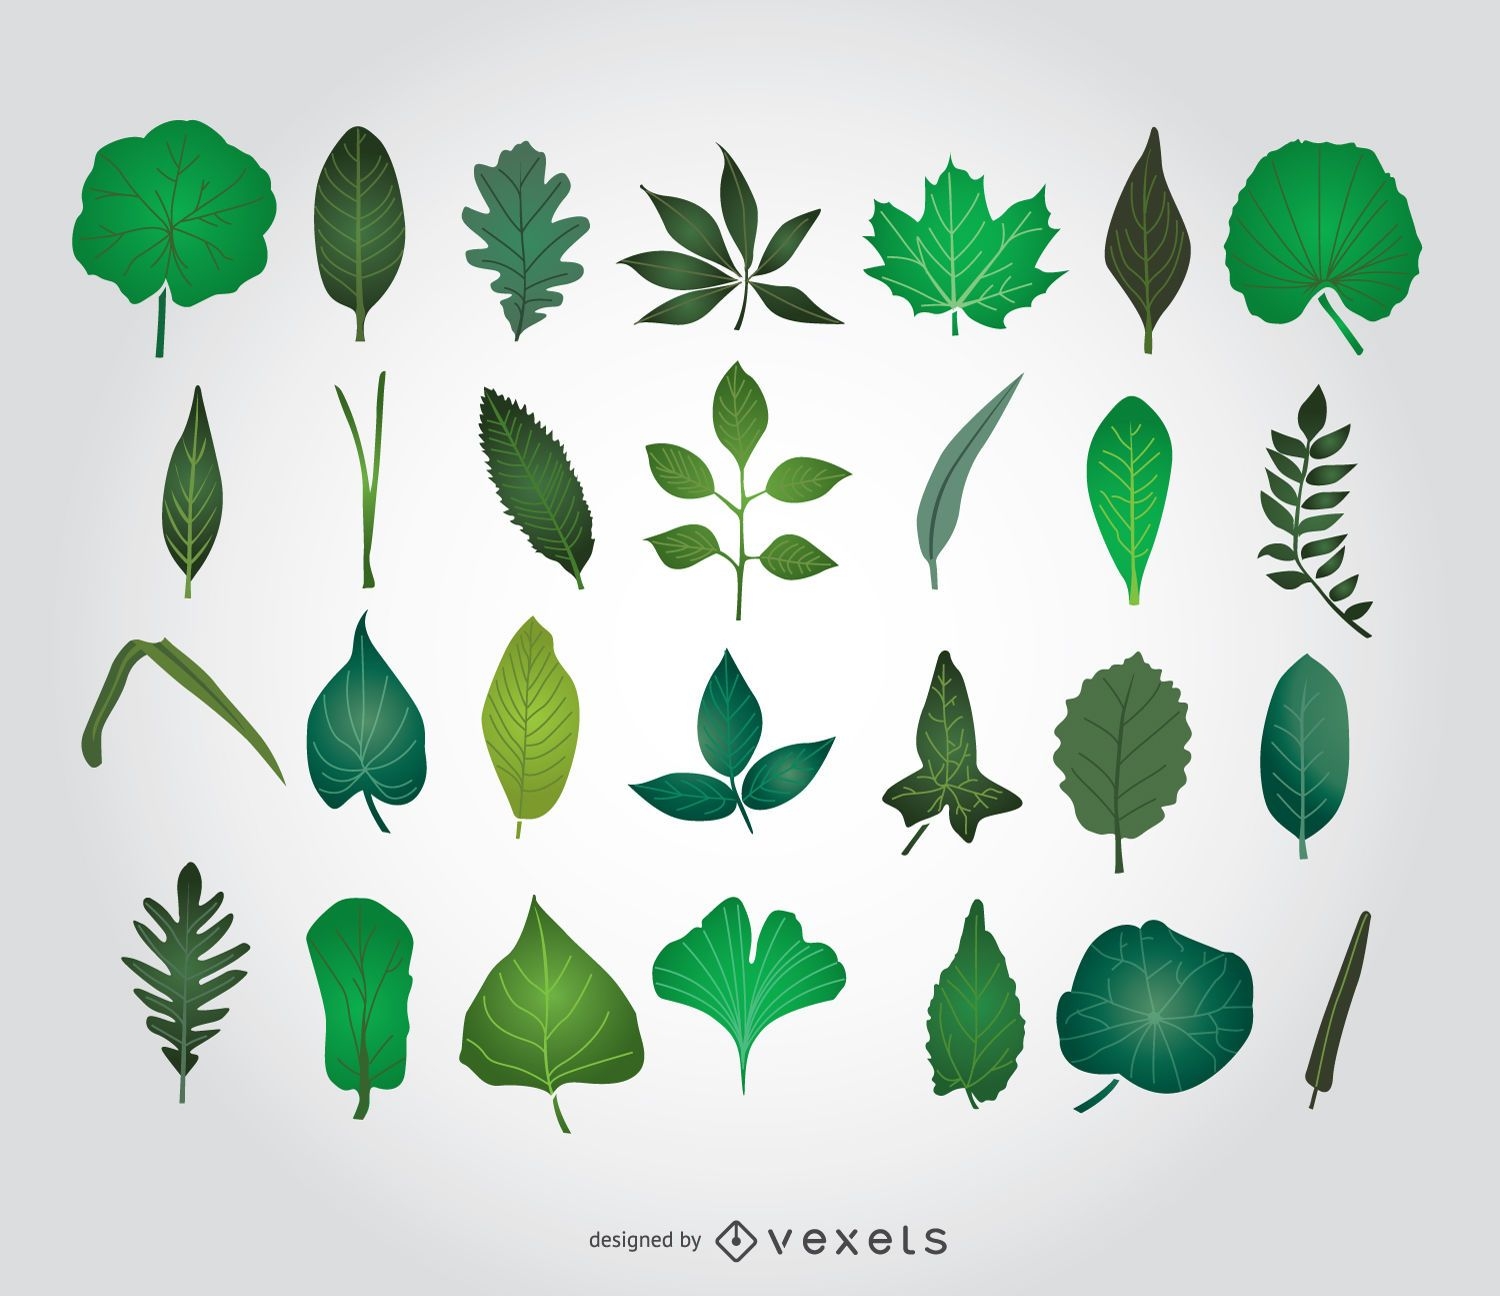 Ilustraciones de hojas verdes